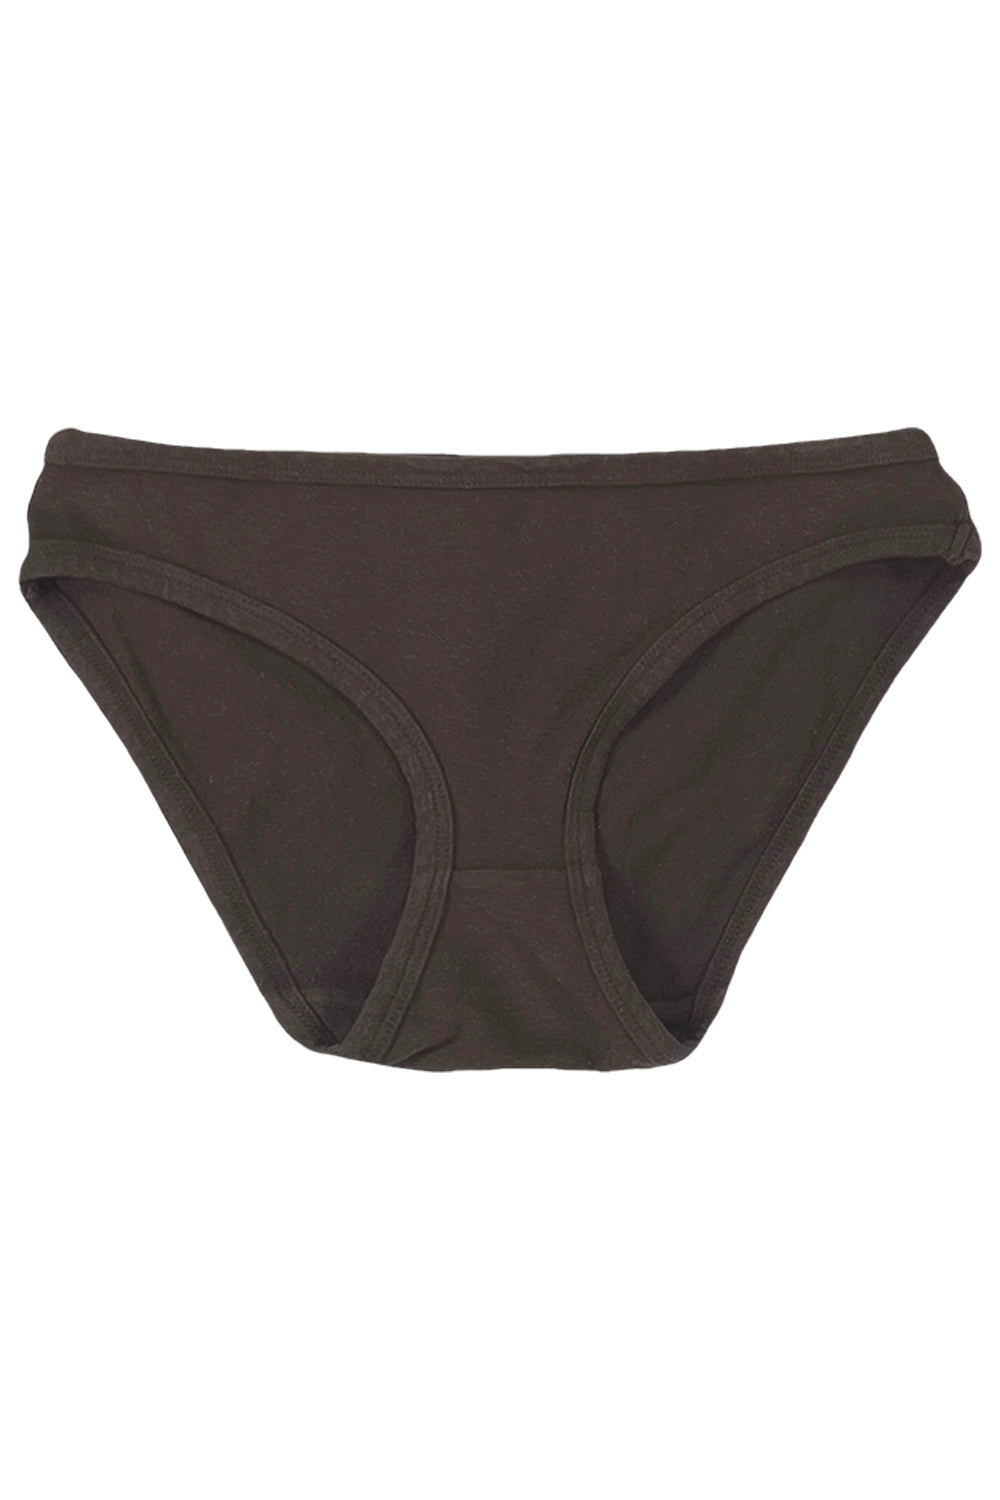 Organic Hemp Brief, Underwear, Natural Dye Boxer Briefs, Dark